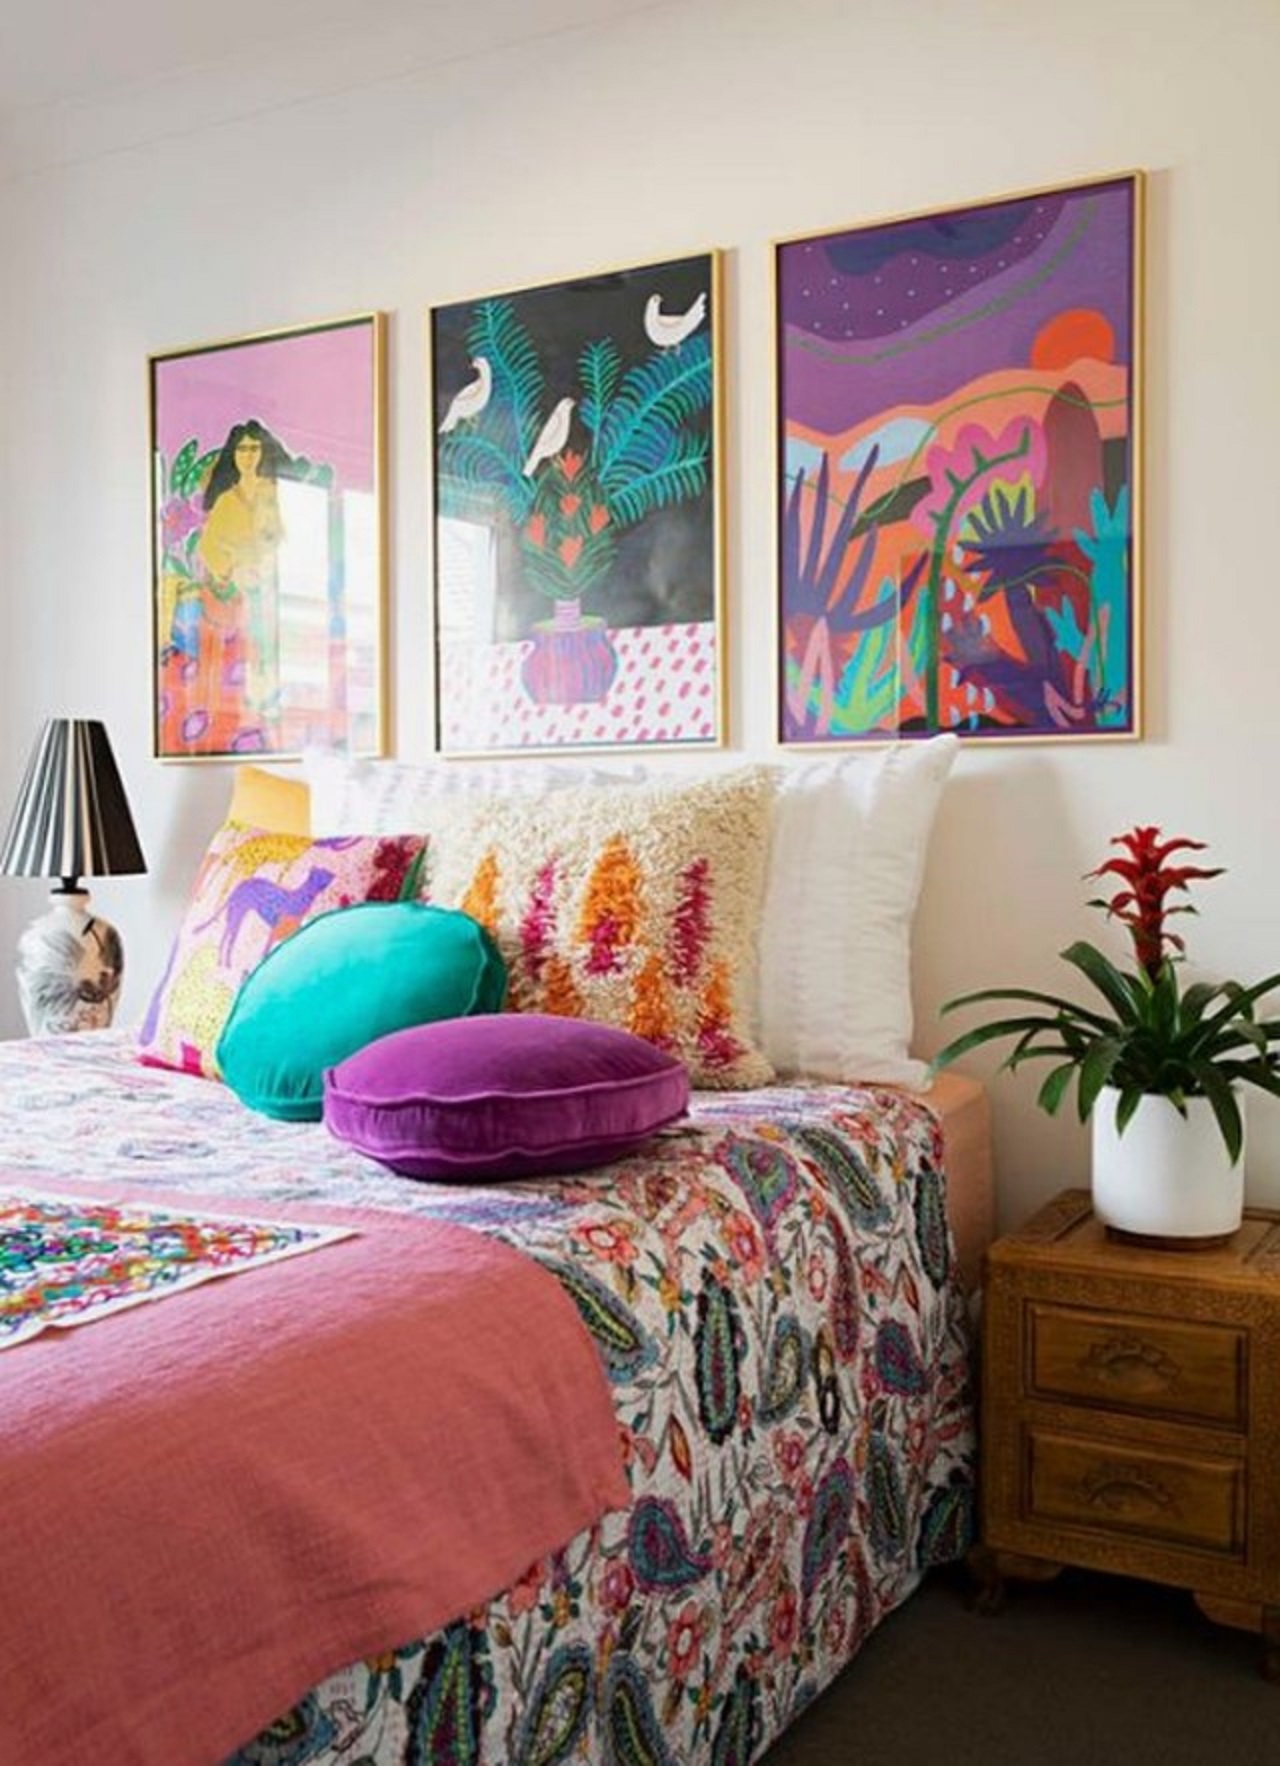 Phòng ngủ đầy màu sắc được tạo nên từ màu ngọc lam và màu tím, với những bức tranh nghệ thuật đầy màu sắc trên tường, họa tiết tropical được in trên vỏ chăn.